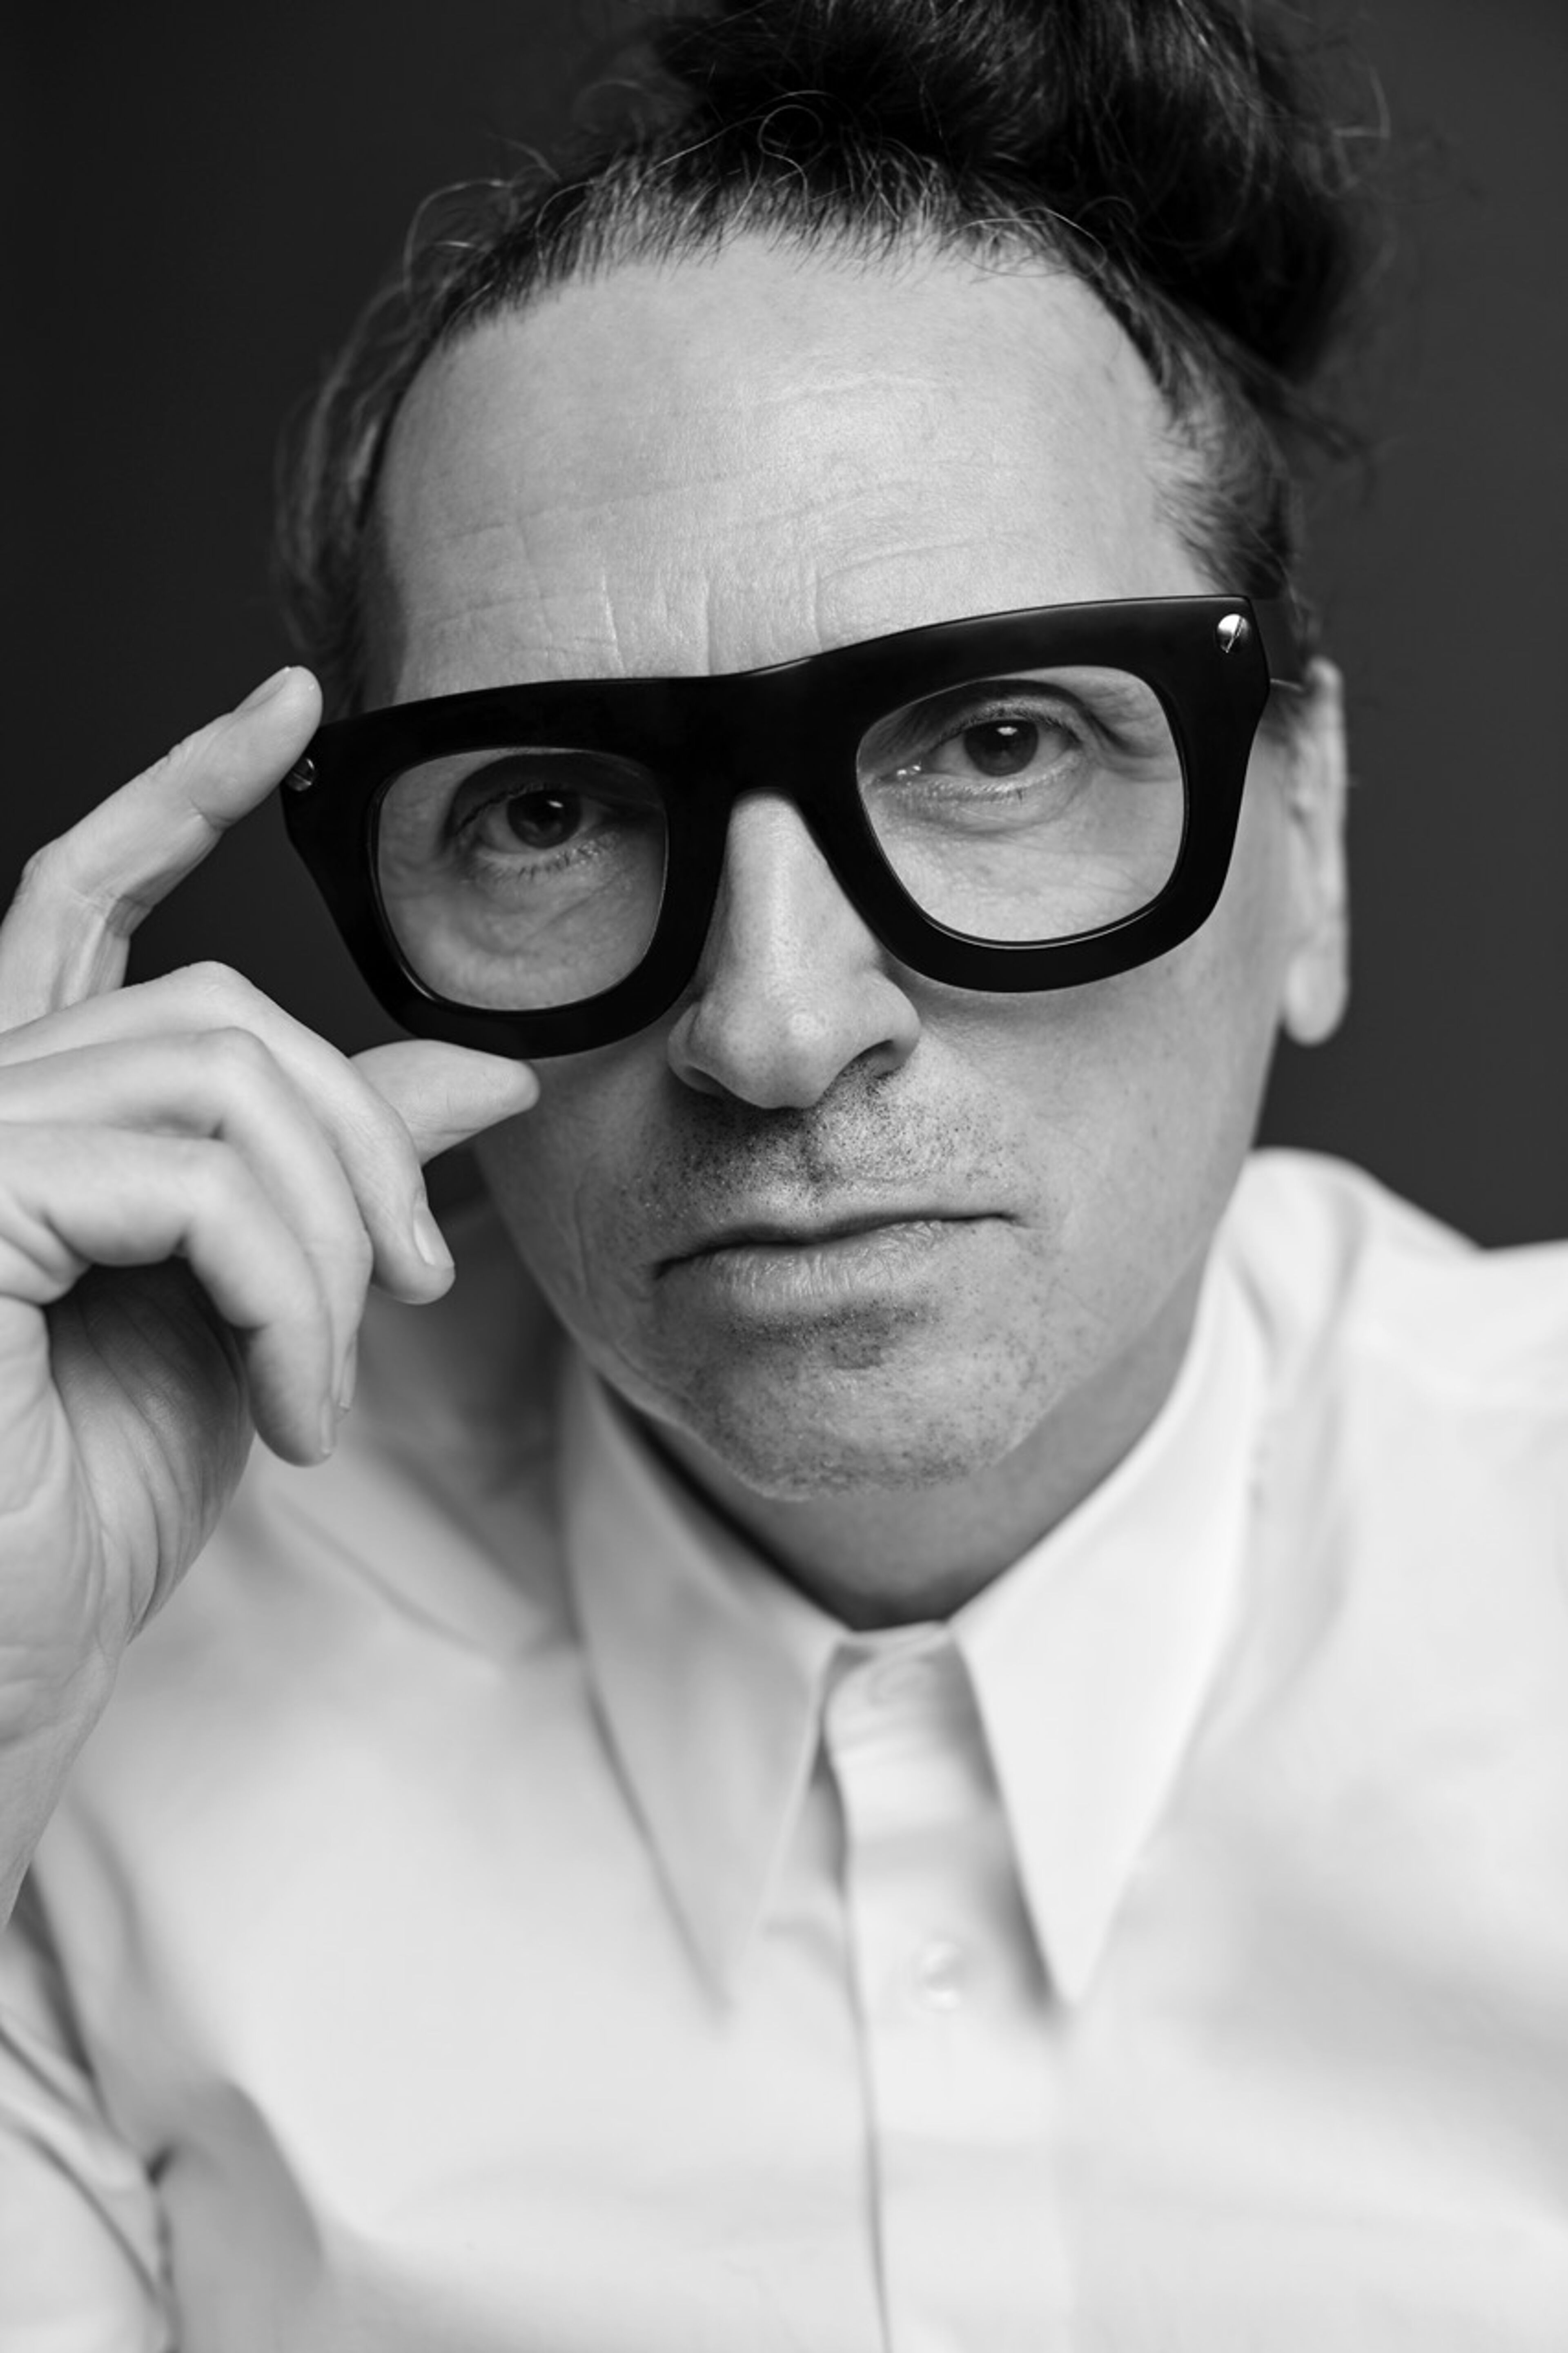 Une image en noir et blanc capturant un homme aux lunettes à grande monture distinctive, regardant intensément le spectateur.